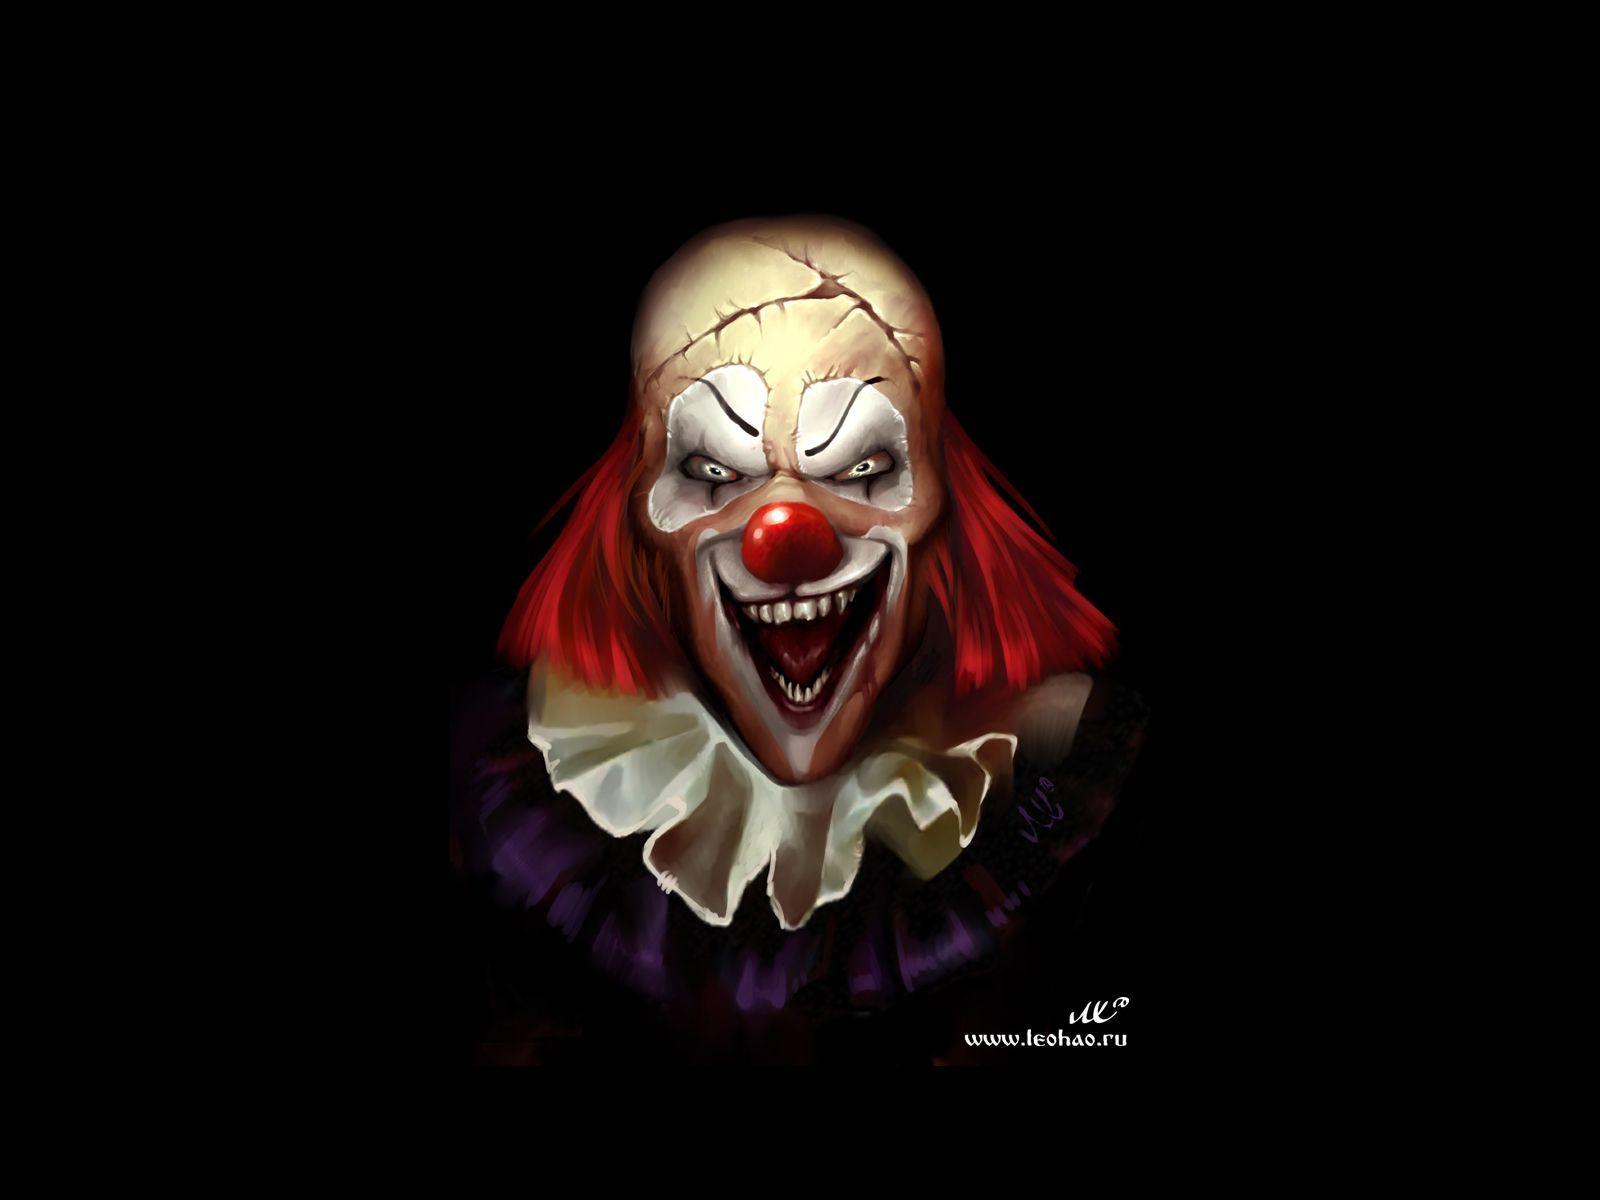 Scary Clown Wallpaper.eu DE. Clowning Around